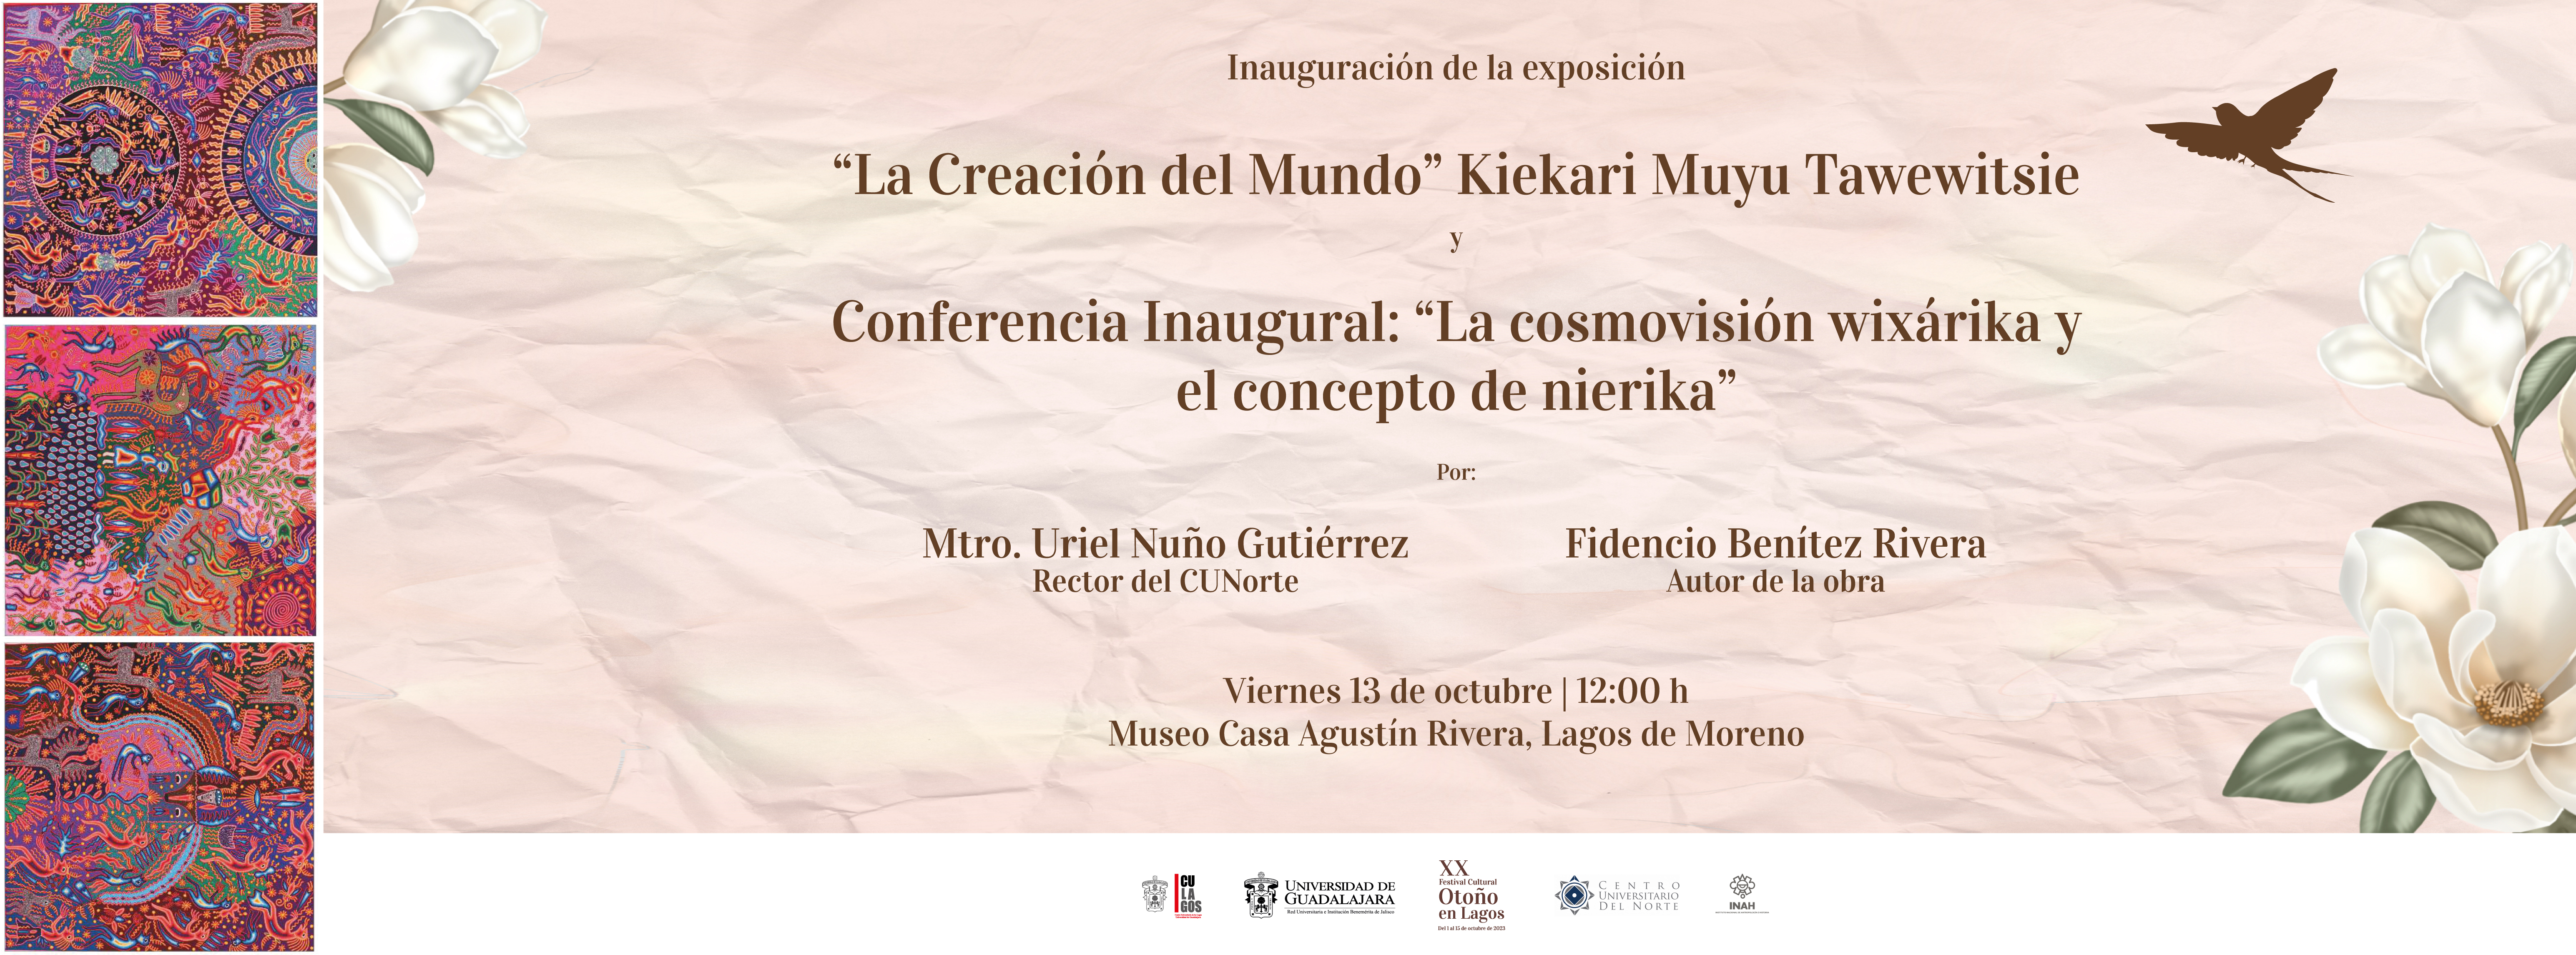 Exposición: La Creación del Mundo, Conferencia inaugural: La cosmovisión wixárika y el concepto de la nierika